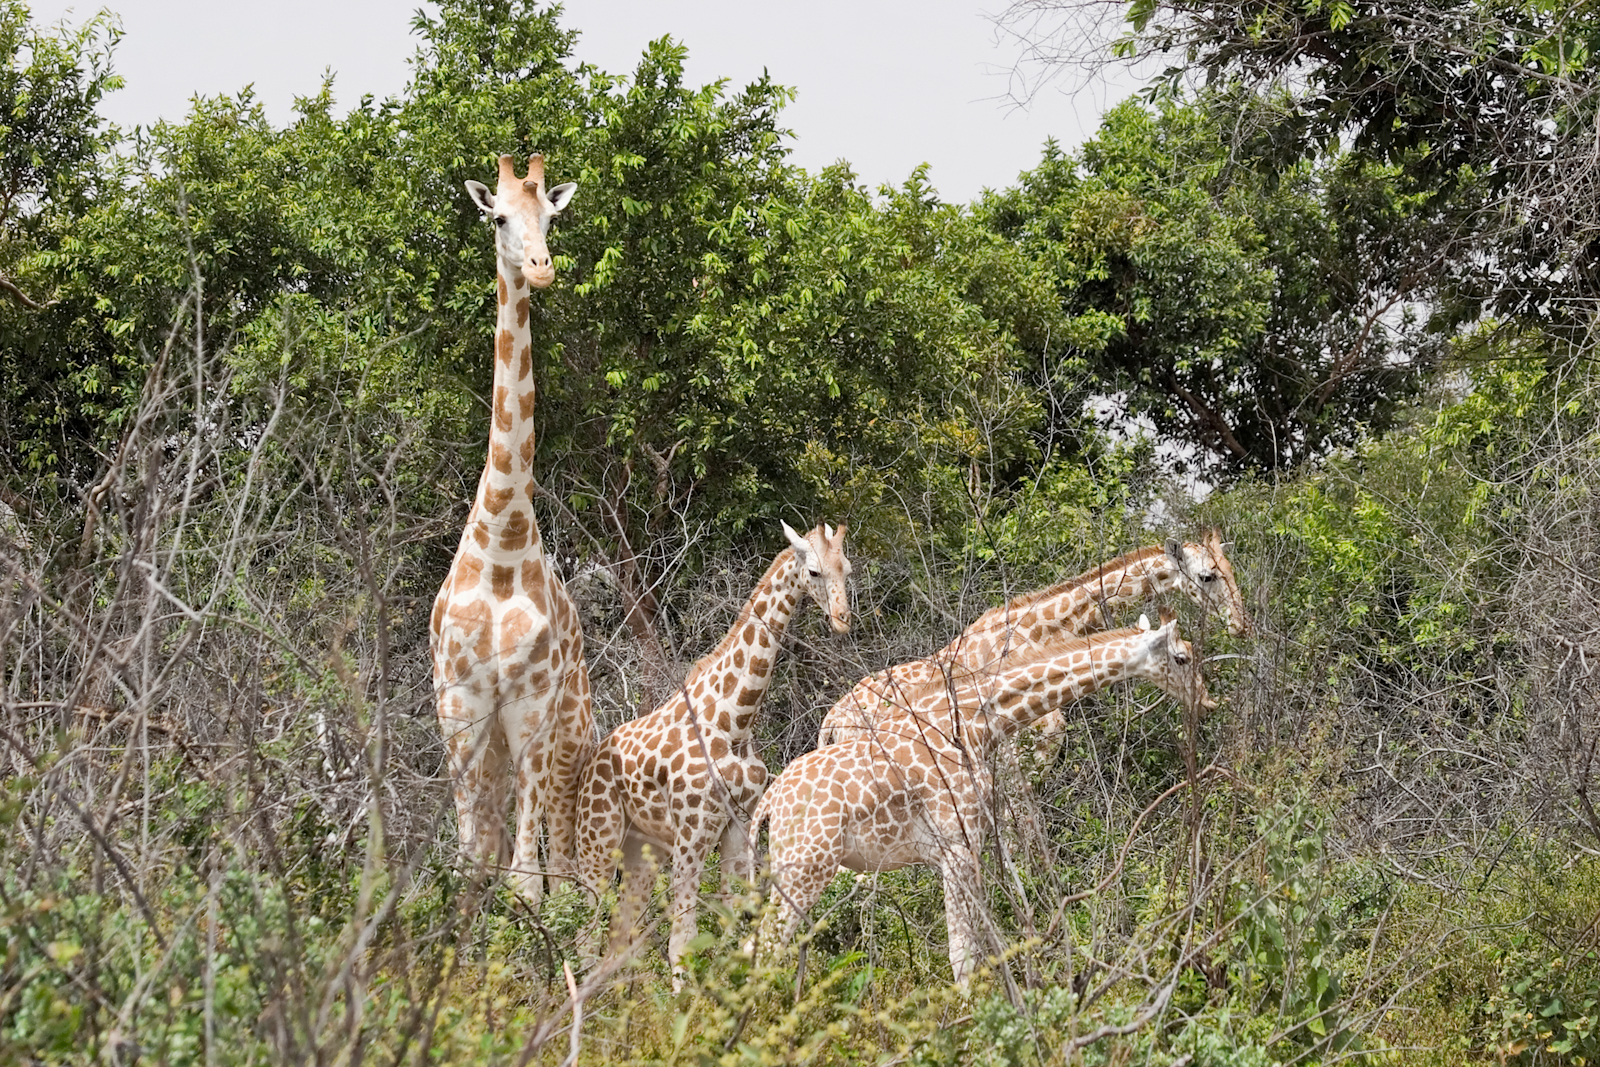 West African giraffe; photo by Matthew Paulson